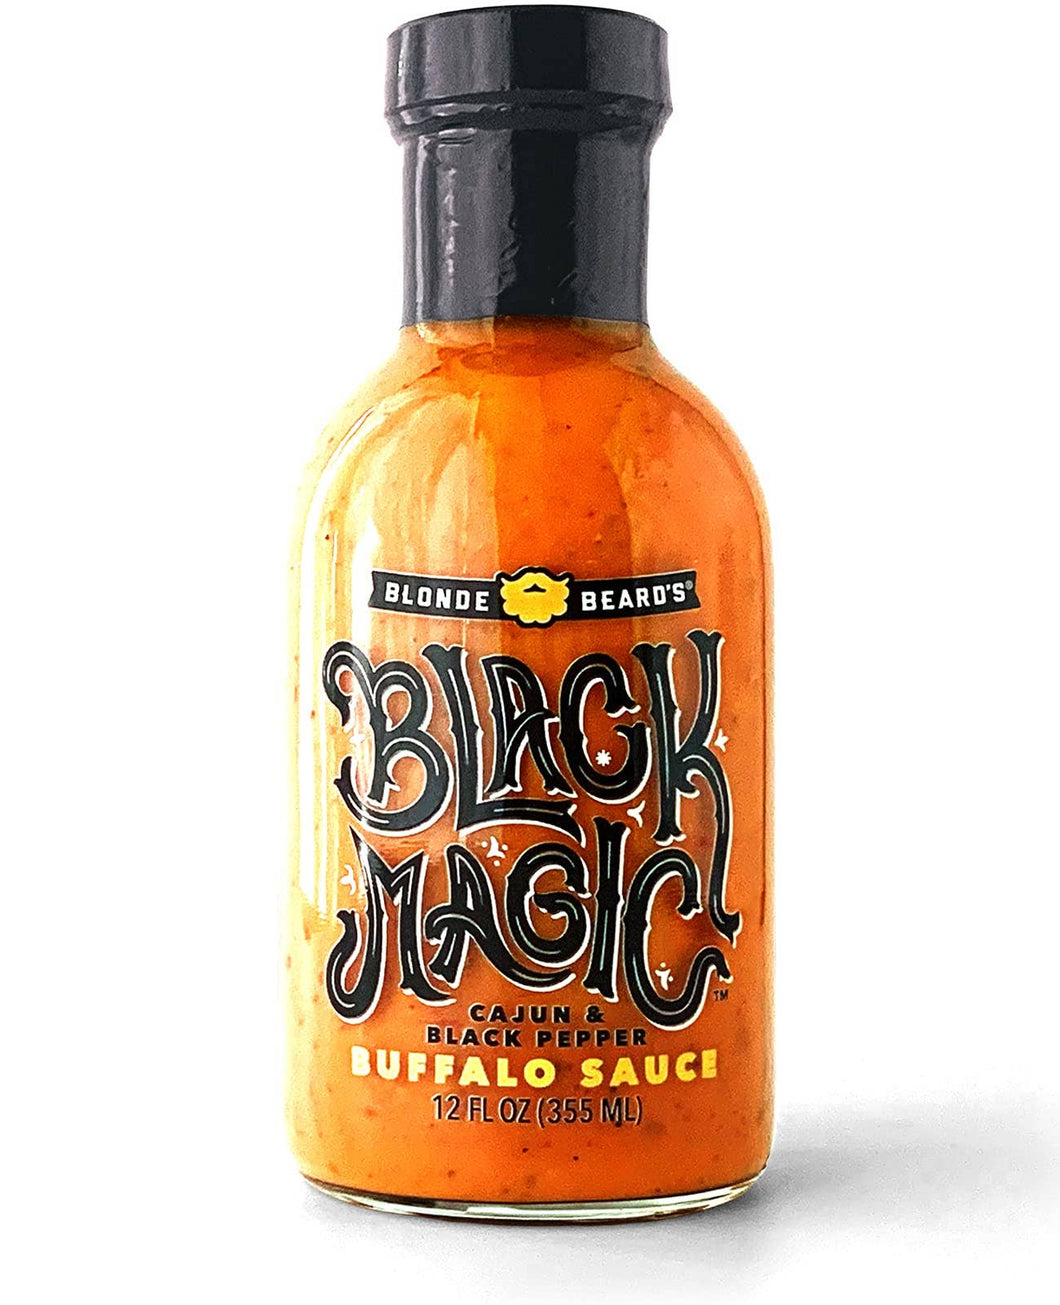 Blonde Beard's Buffalo Sauce - Black Magic Buffalo Sauce